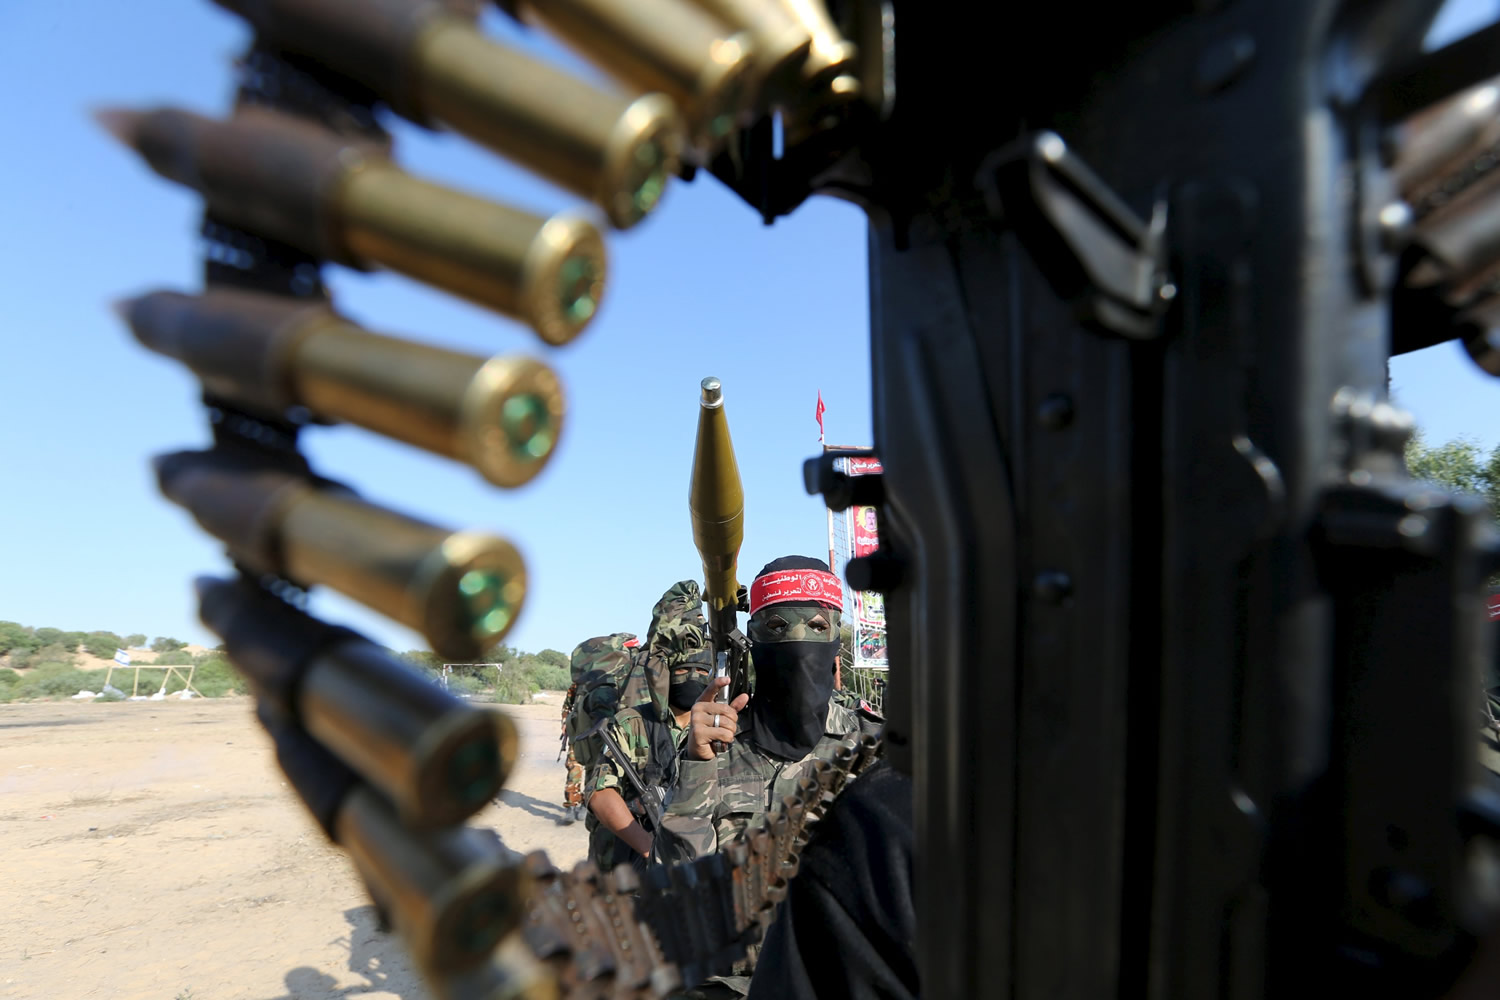 Ejército Eléctrónico Palestino celebra la graduación de nuevos militares hackeando webs proisraelíes